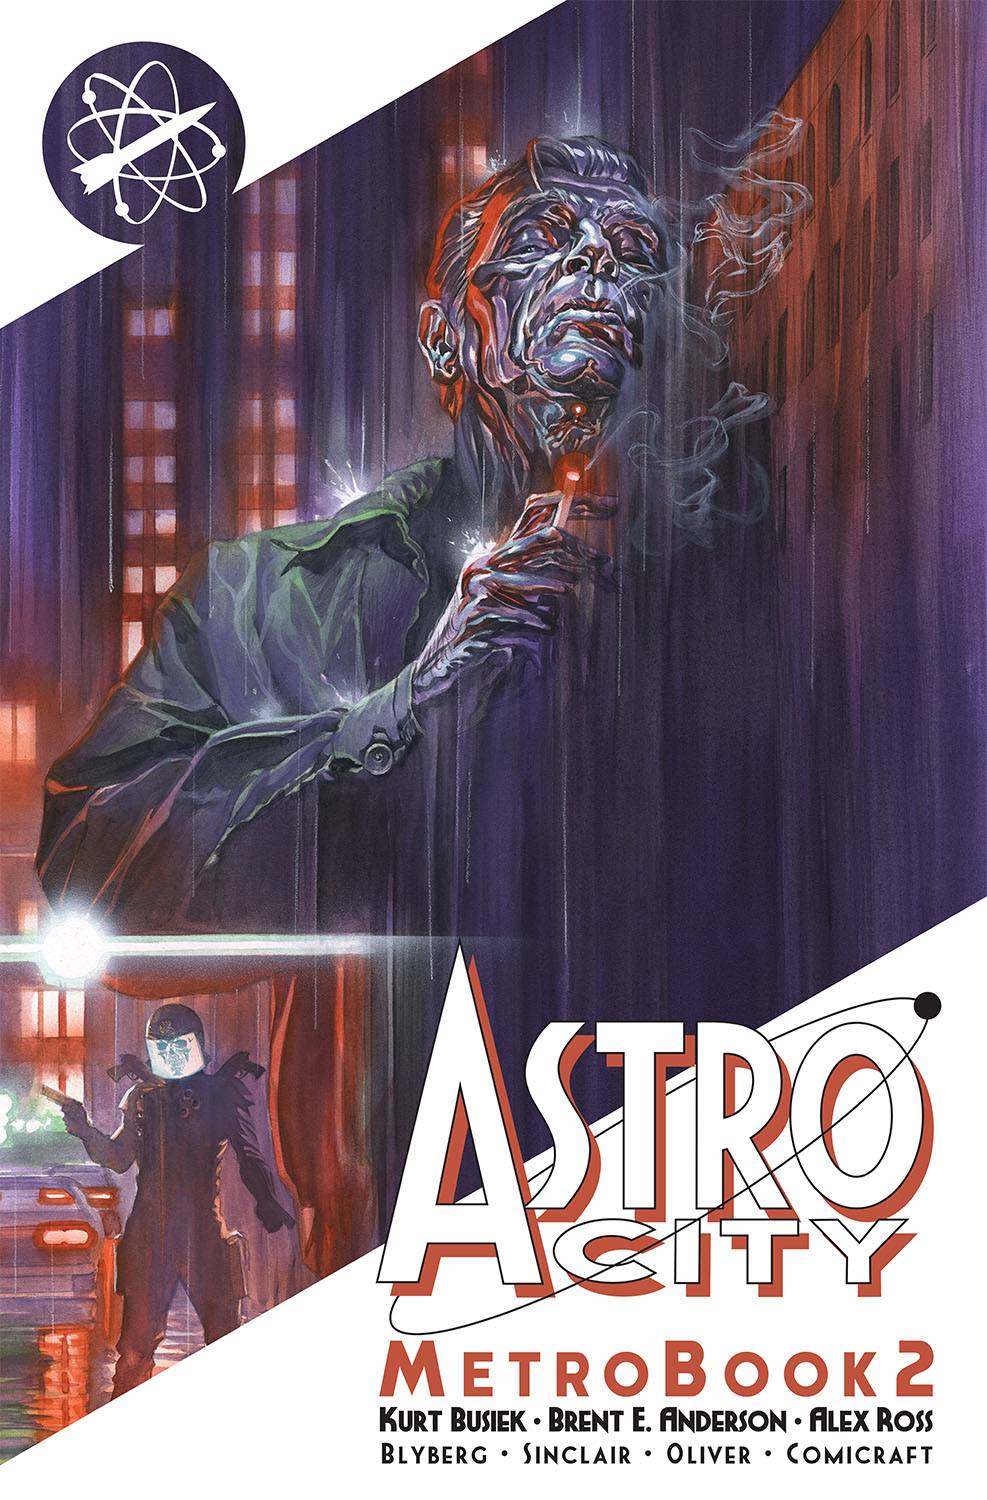 Astro City MetroBook Volume 2